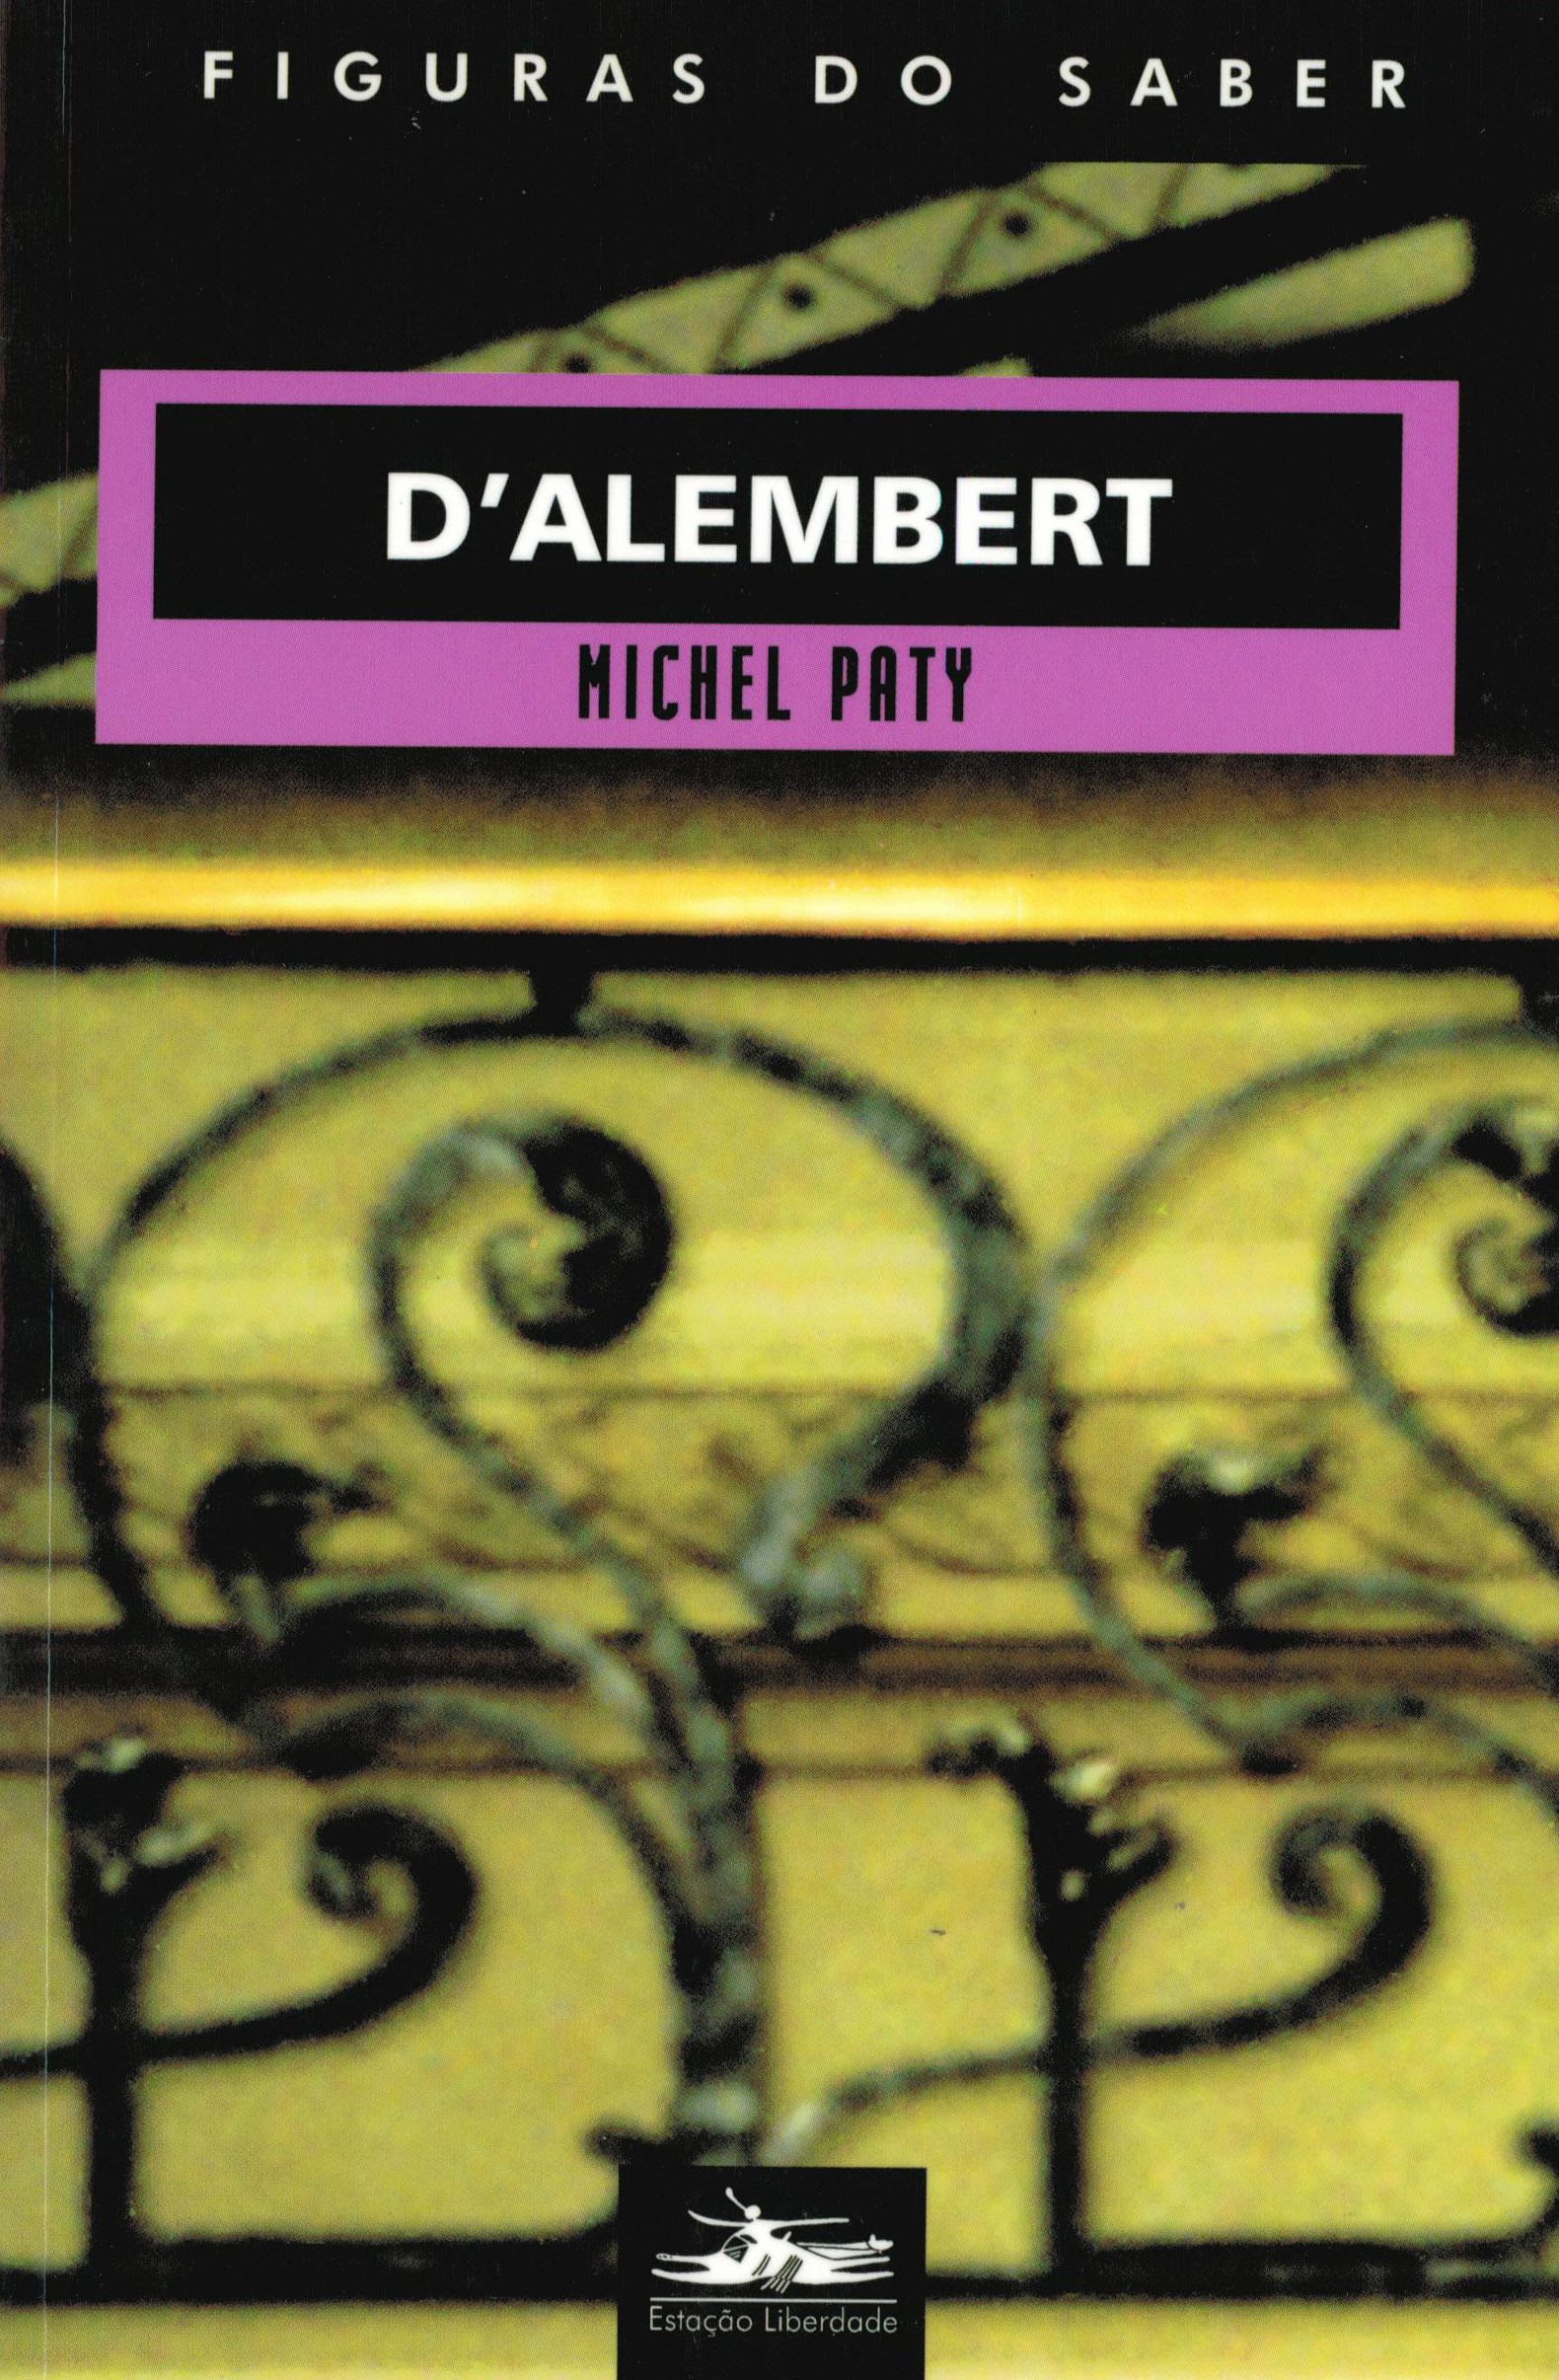 D'alembert 